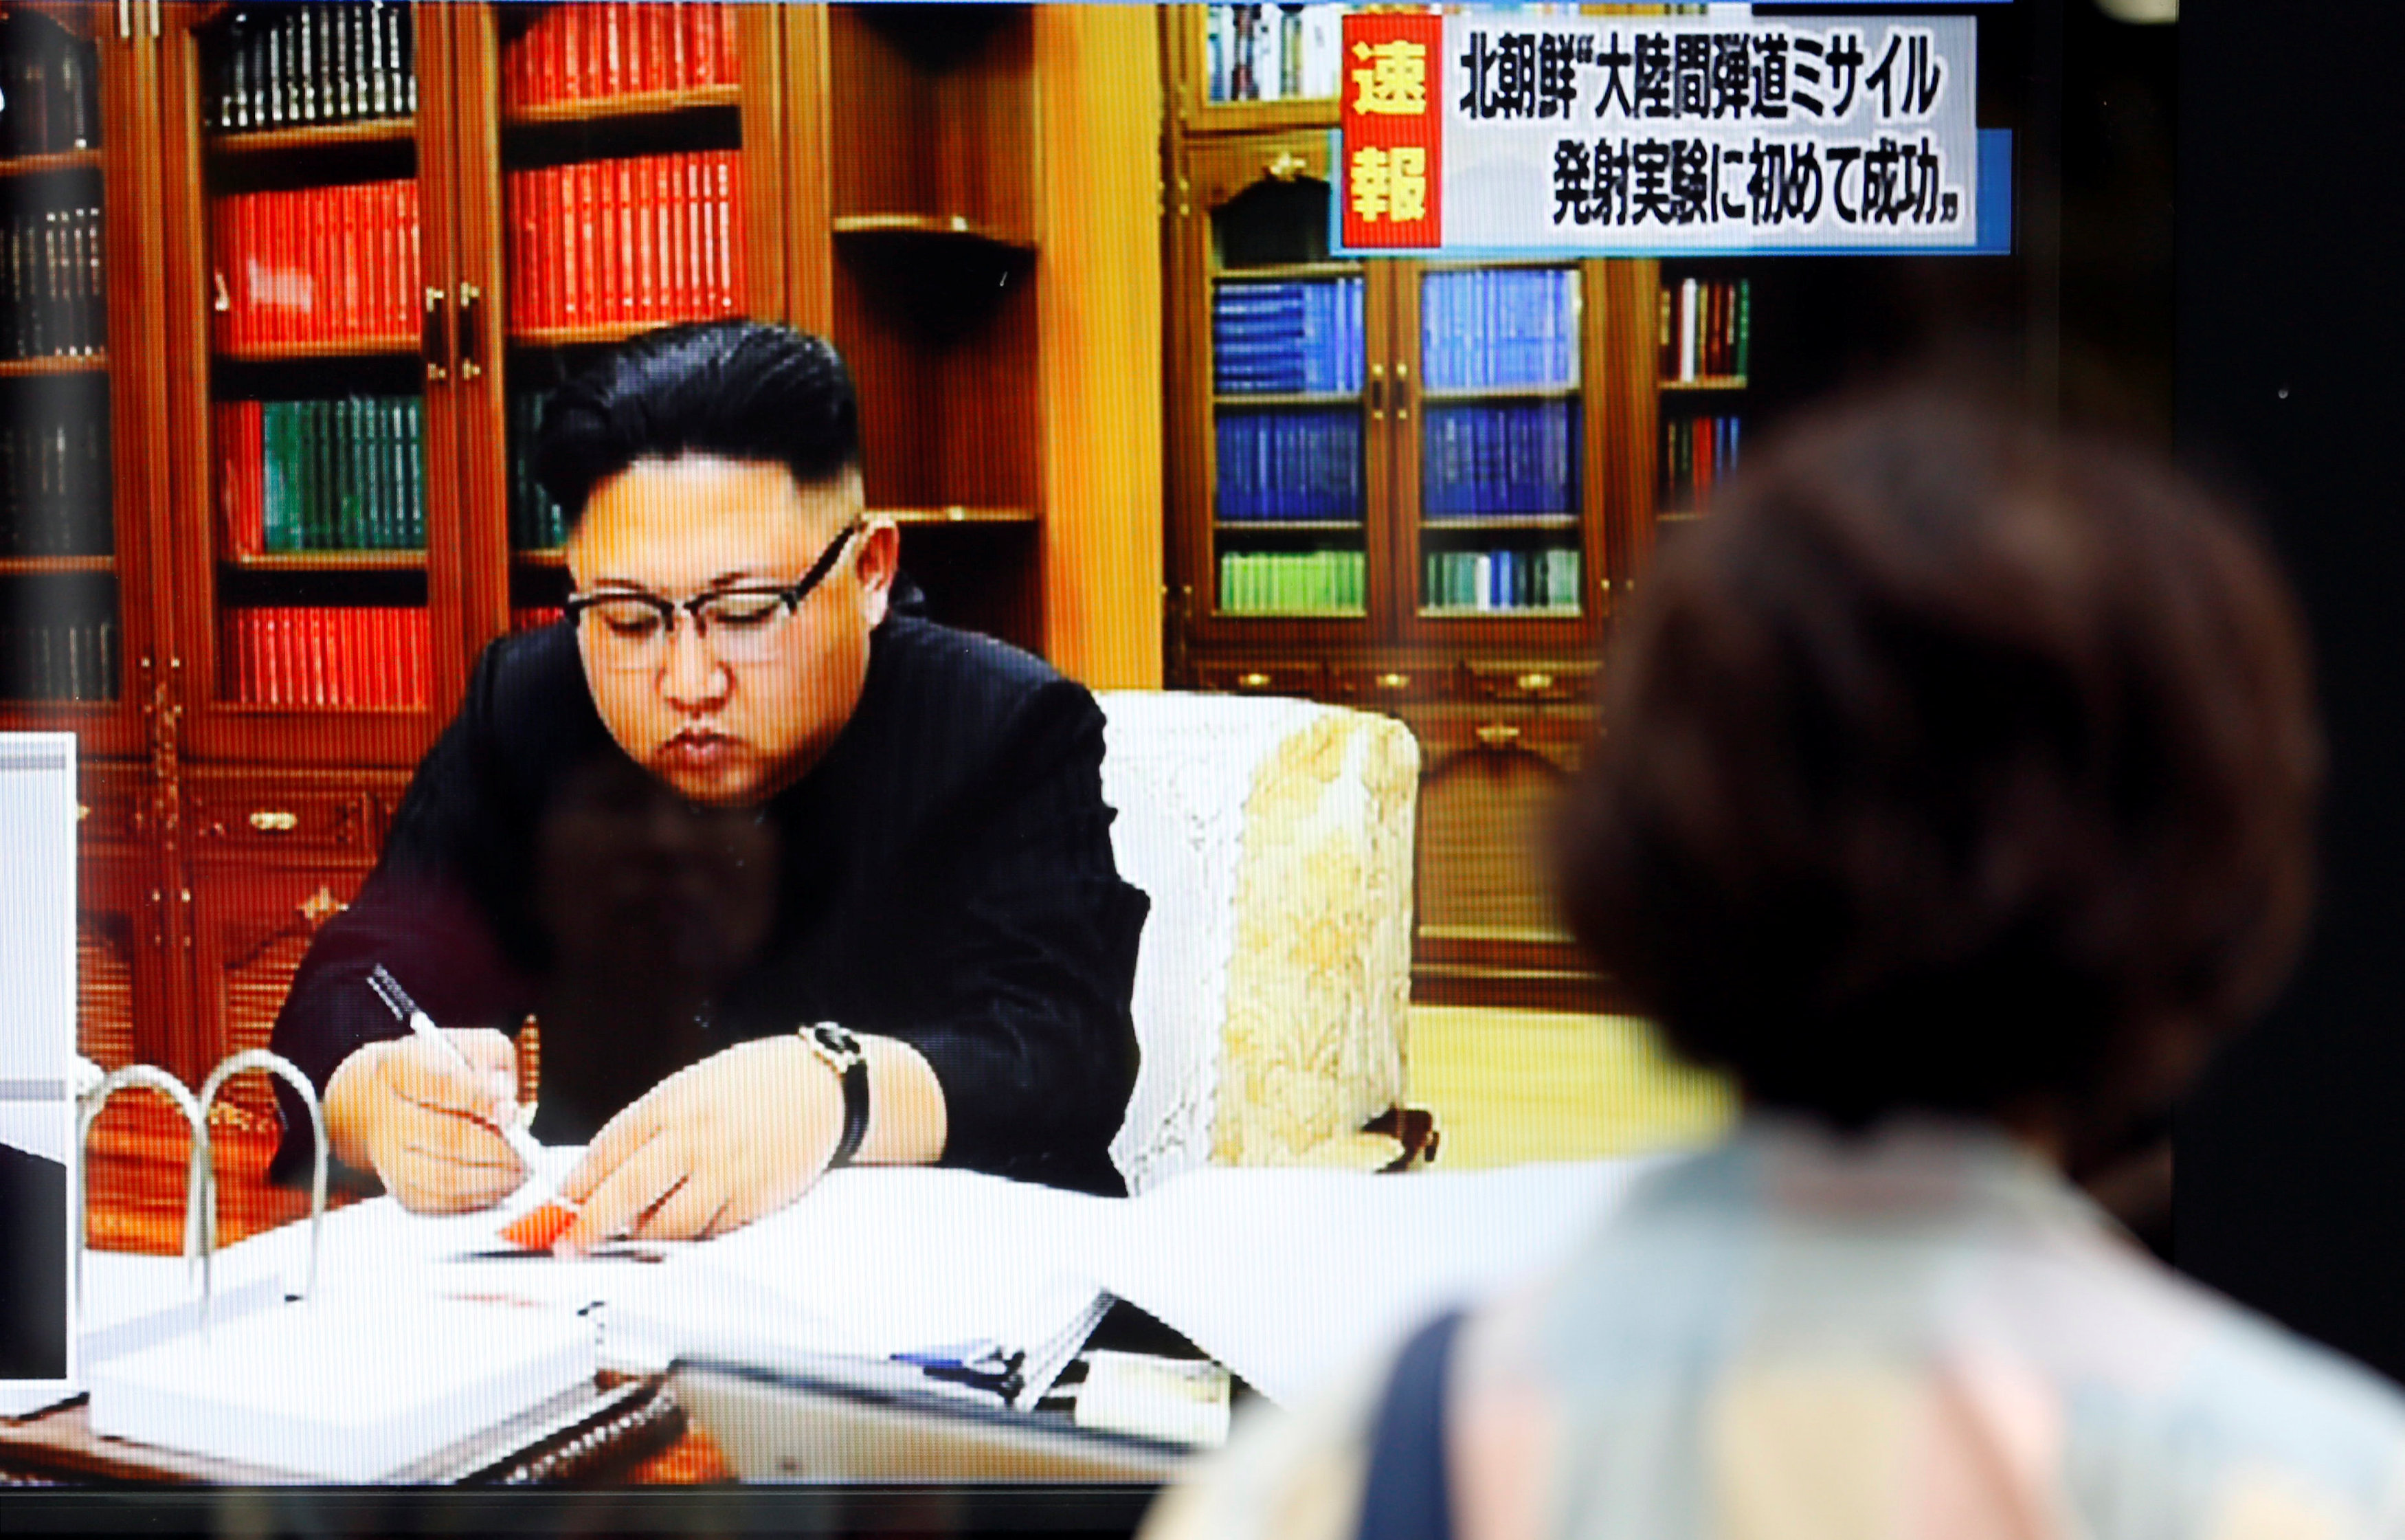 زعيم كوريا الشمالية يوقع موافقة لإجراء تجربة صاروخية جديدة